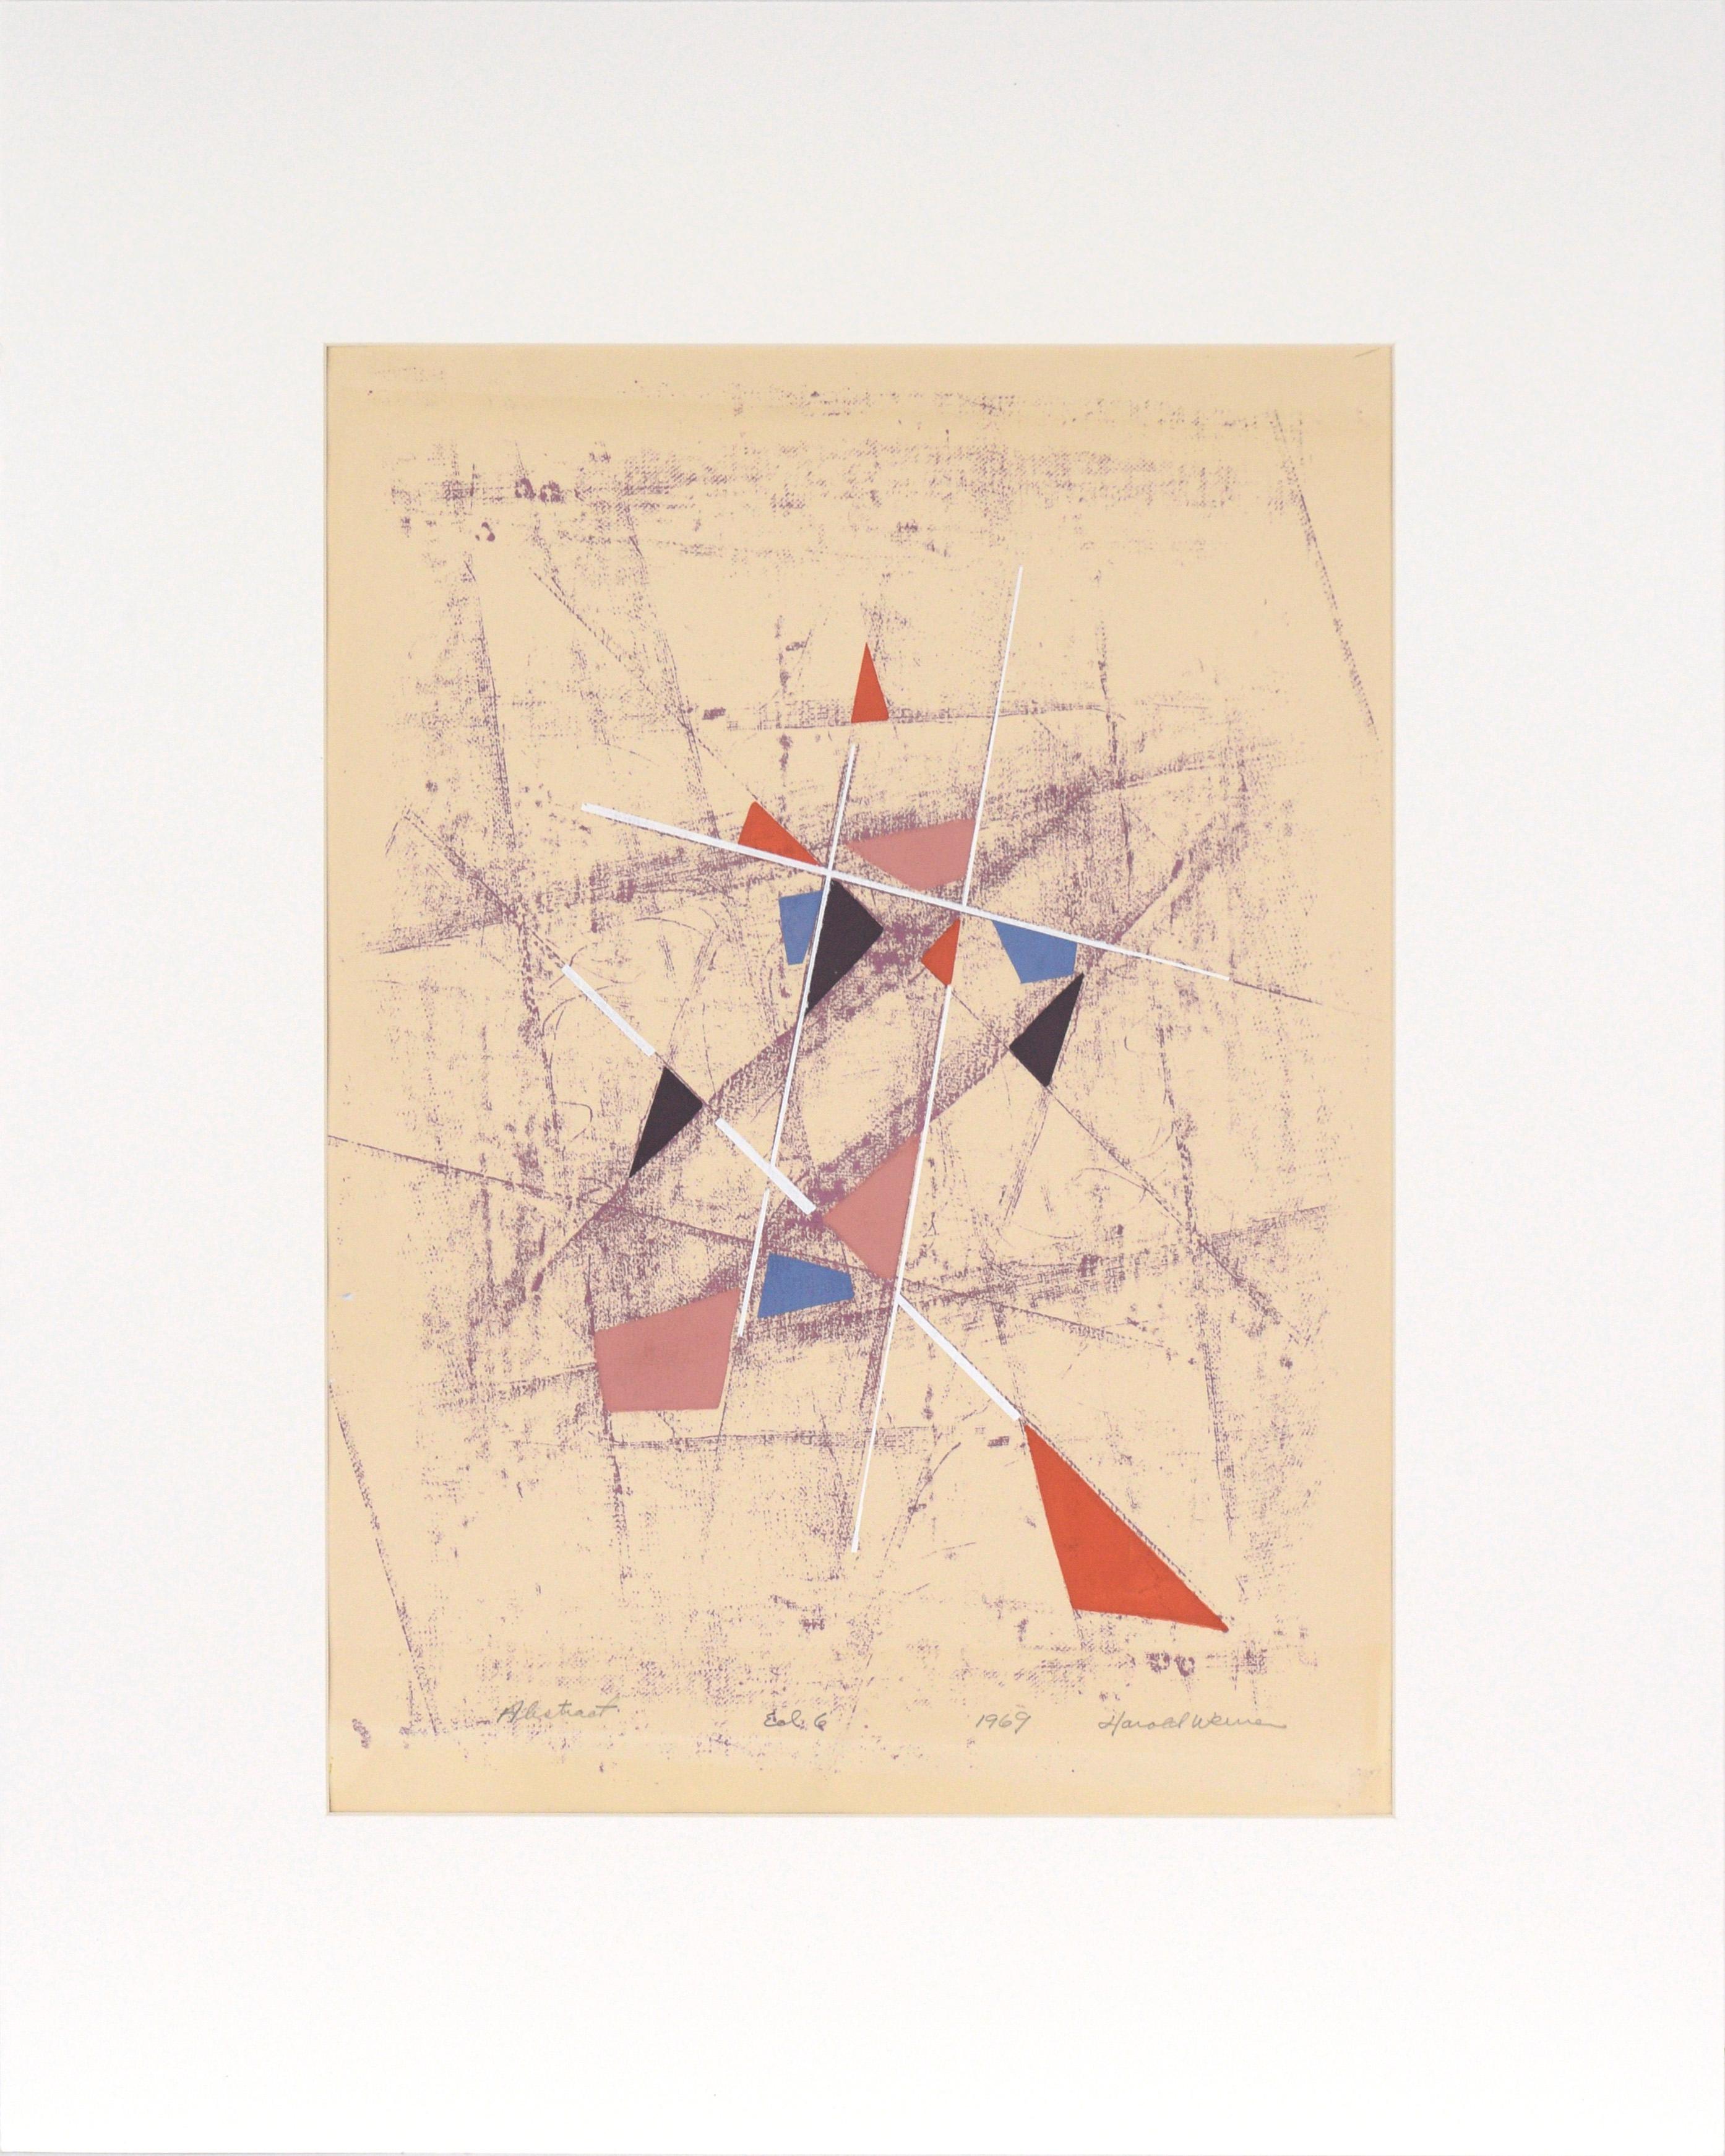 Geometrische abstrakte Lithographie im Stil von Kandinsky von Harold Weiner
Verspielte abstrakte Komposition mit dem Titel "Abstract" von Harold Weiner (20. Jahrhundert). Eine kleine Auflage von 6 Exemplaren. Mehrere Formen sind in einer